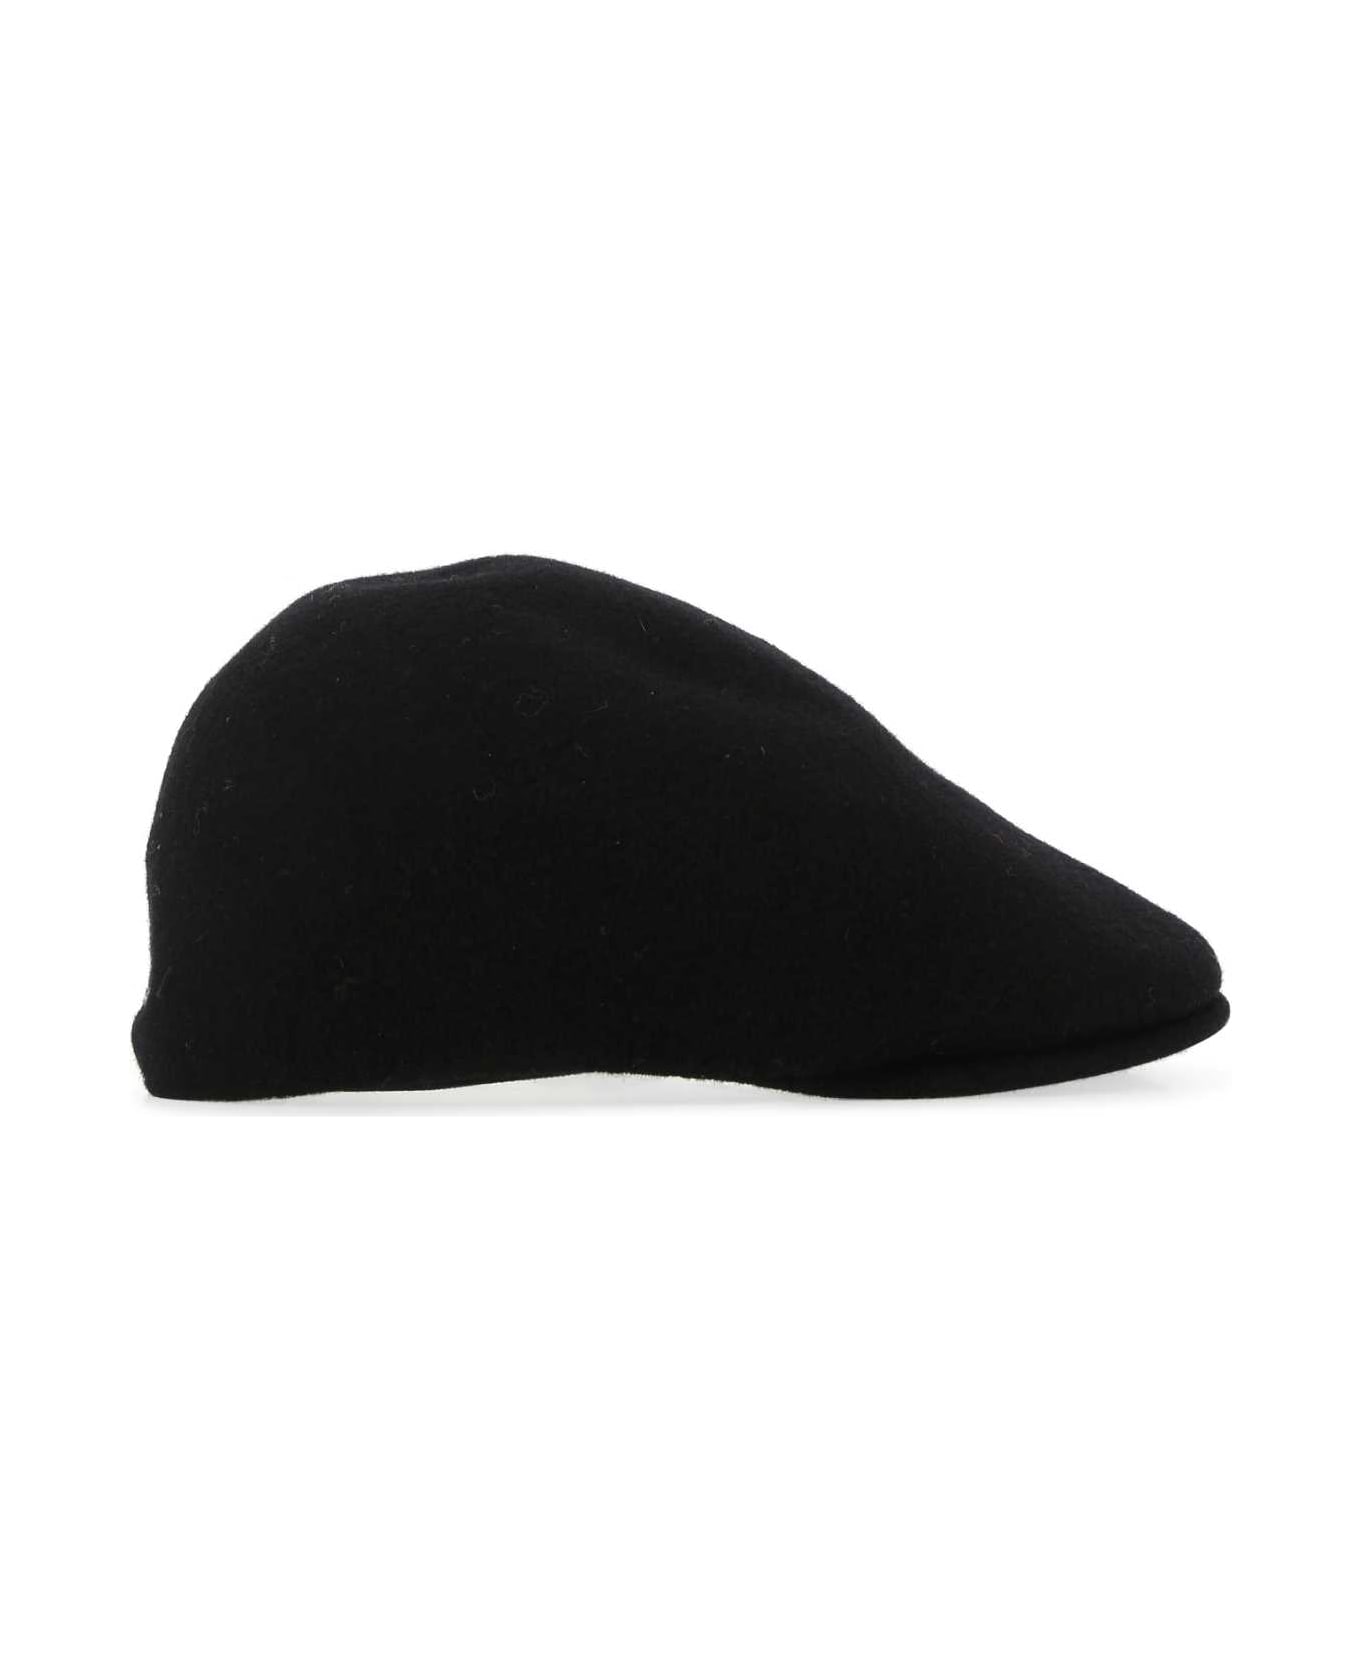 Kangol Black Felt Baker Boy Hat - BK001